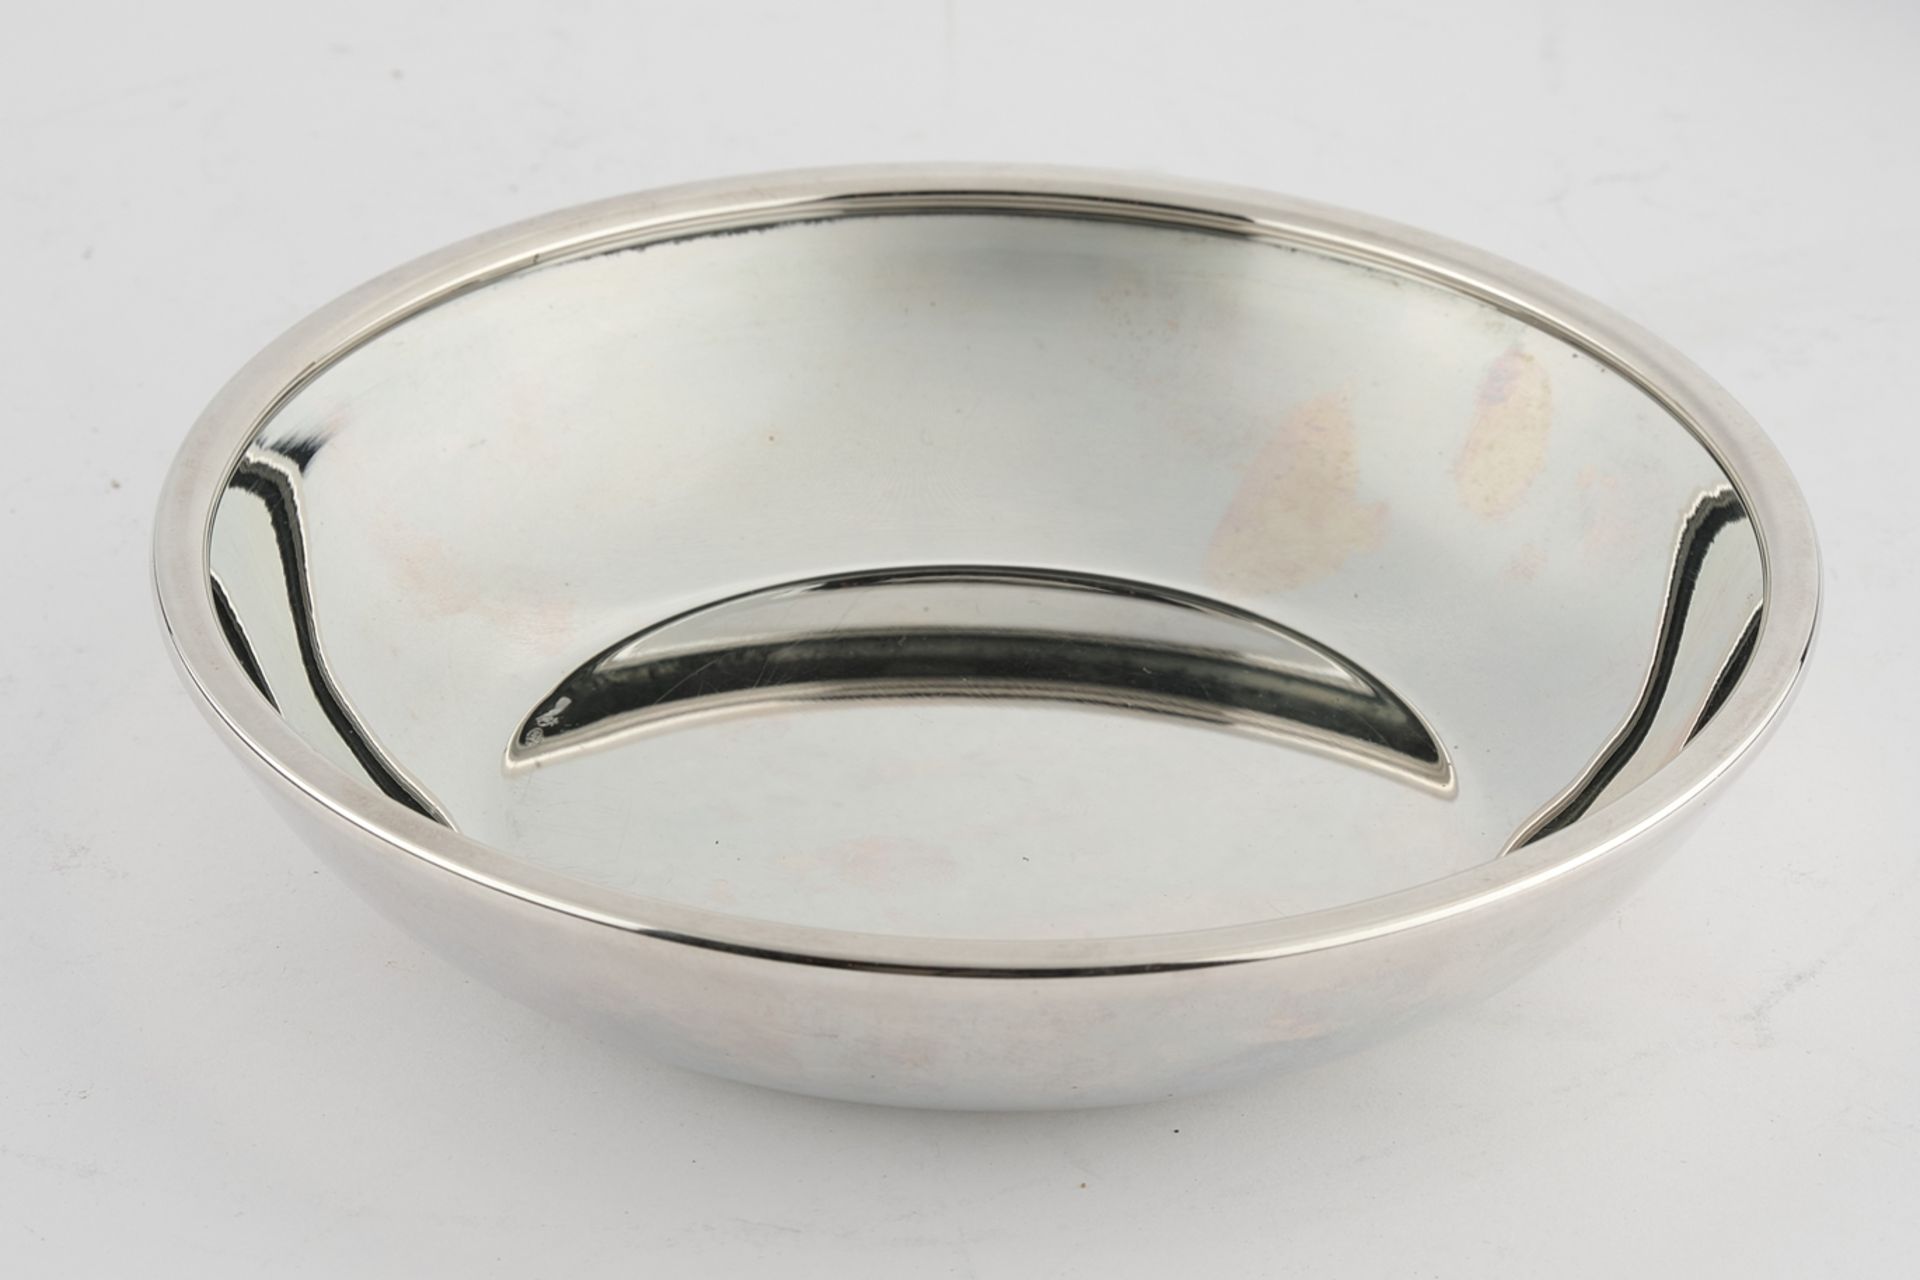 Schale, Silber 800, Italien, Schiavon, glatt, ansteigend, 3.4 cm hoch, ø 16.7 cm, ca. 230 g